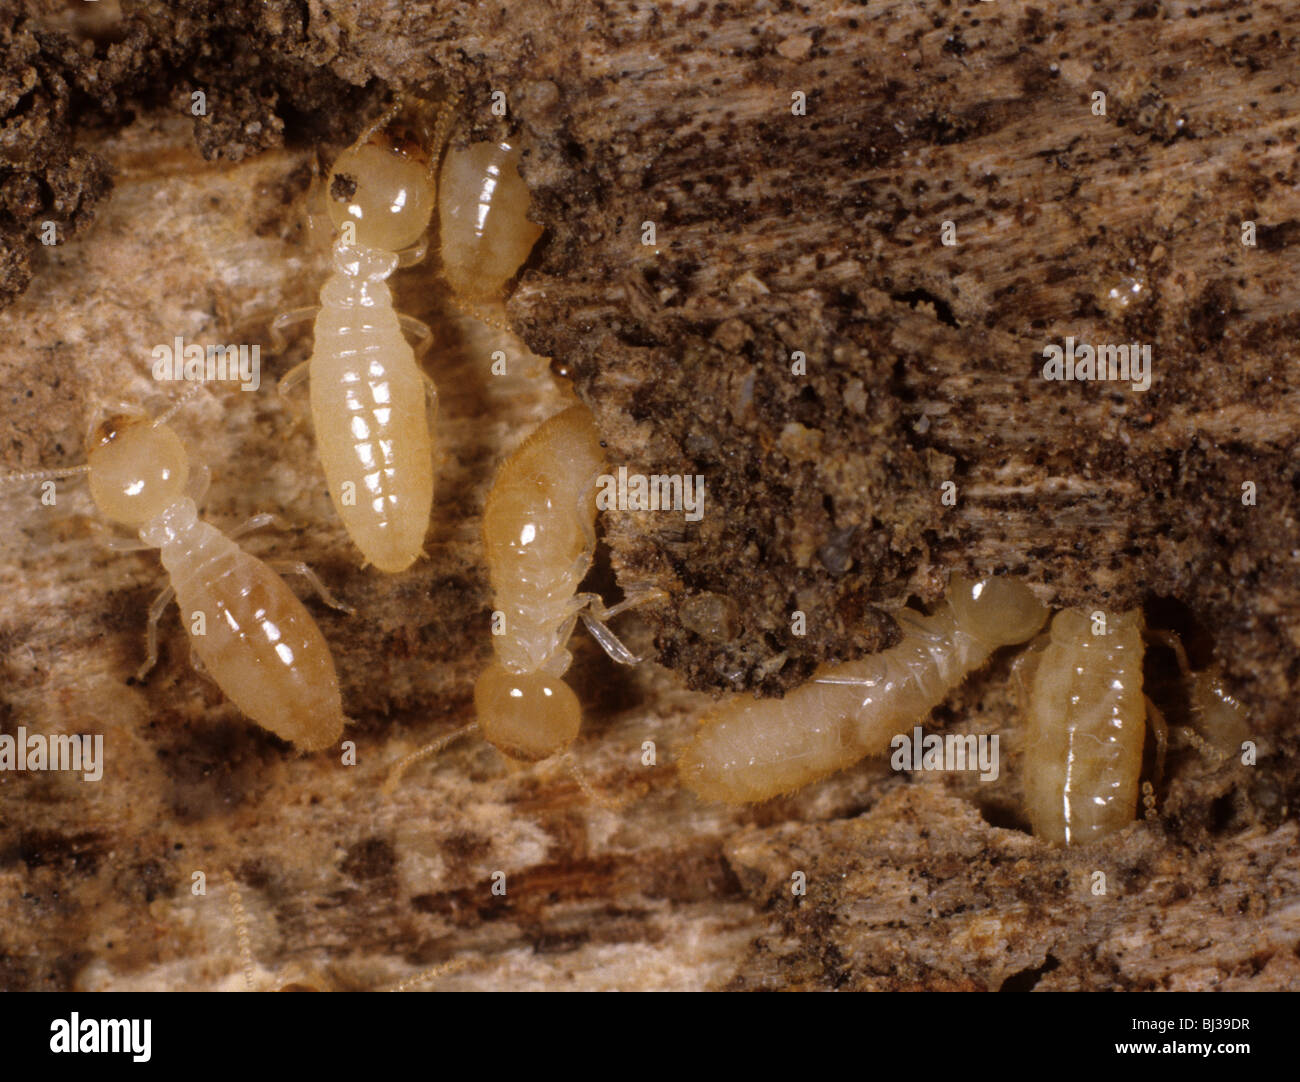 Les termites (Reticulitermes sp.) le bois endommagé Banque D'Images